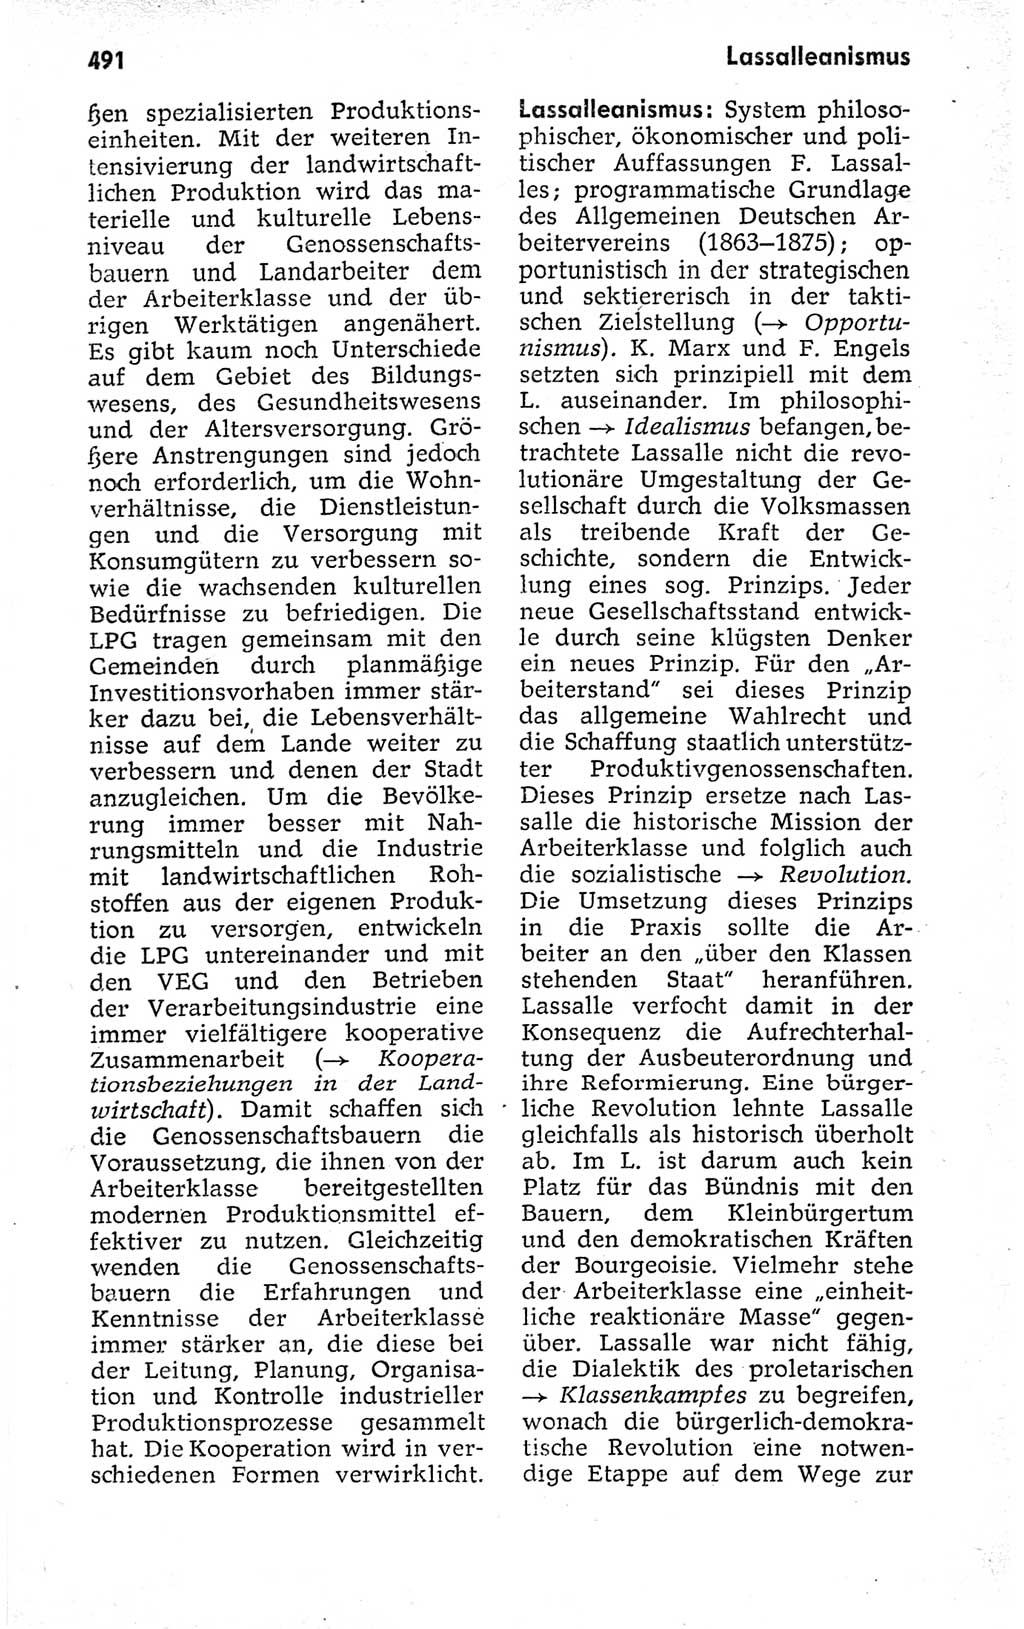 Kleines politisches Wörterbuch [Deutsche Demokratische Republik (DDR)] 1973, Seite 491 (Kl. pol. Wb. DDR 1973, S. 491)